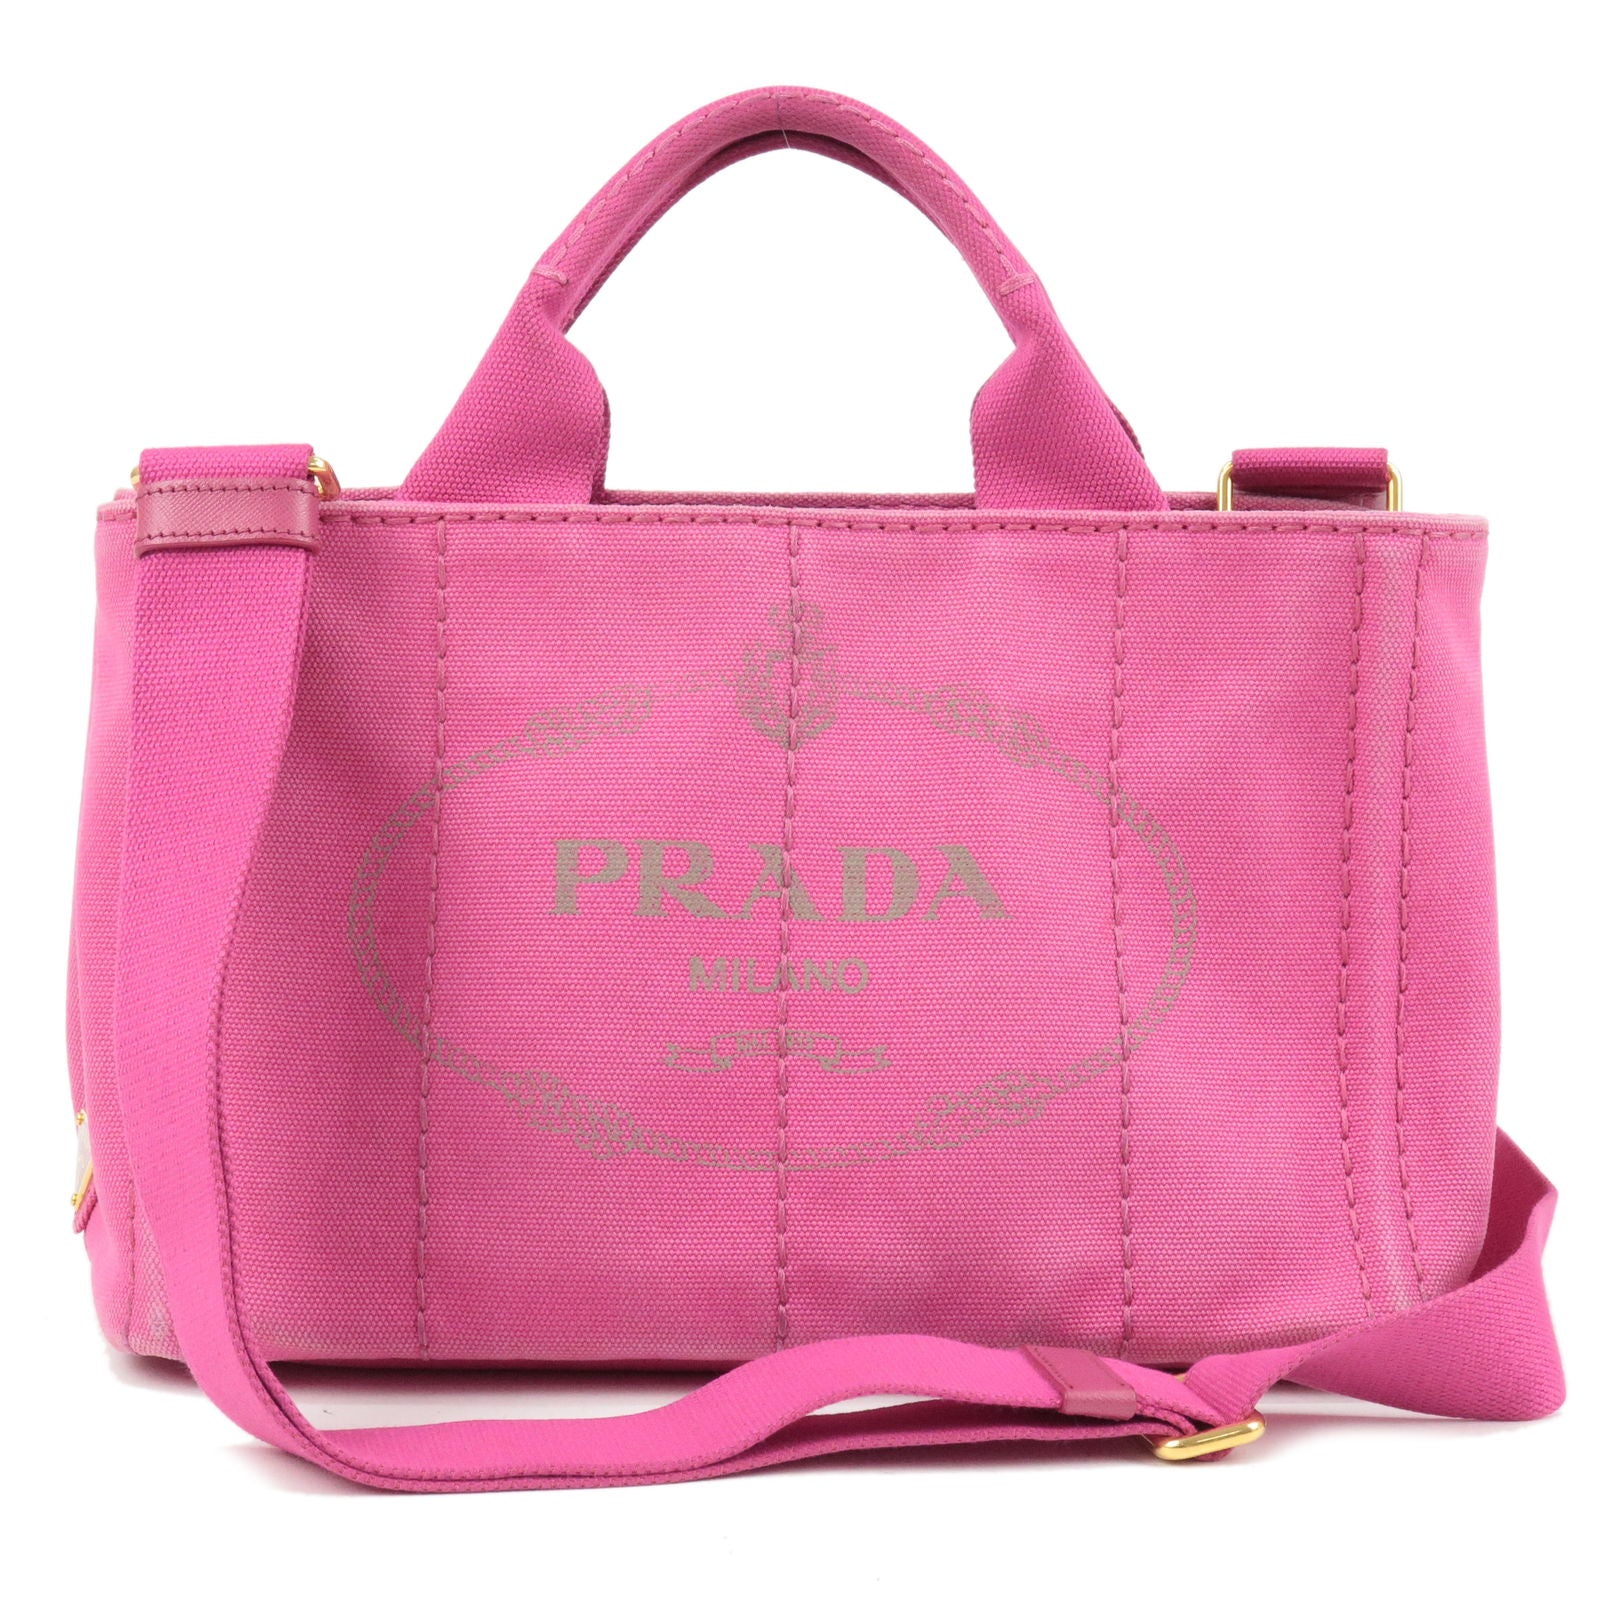 PRADA-Canapa-Mini-Canvas-2Way-Bag-Shoulder-Bag-Hand-Bag-Pink